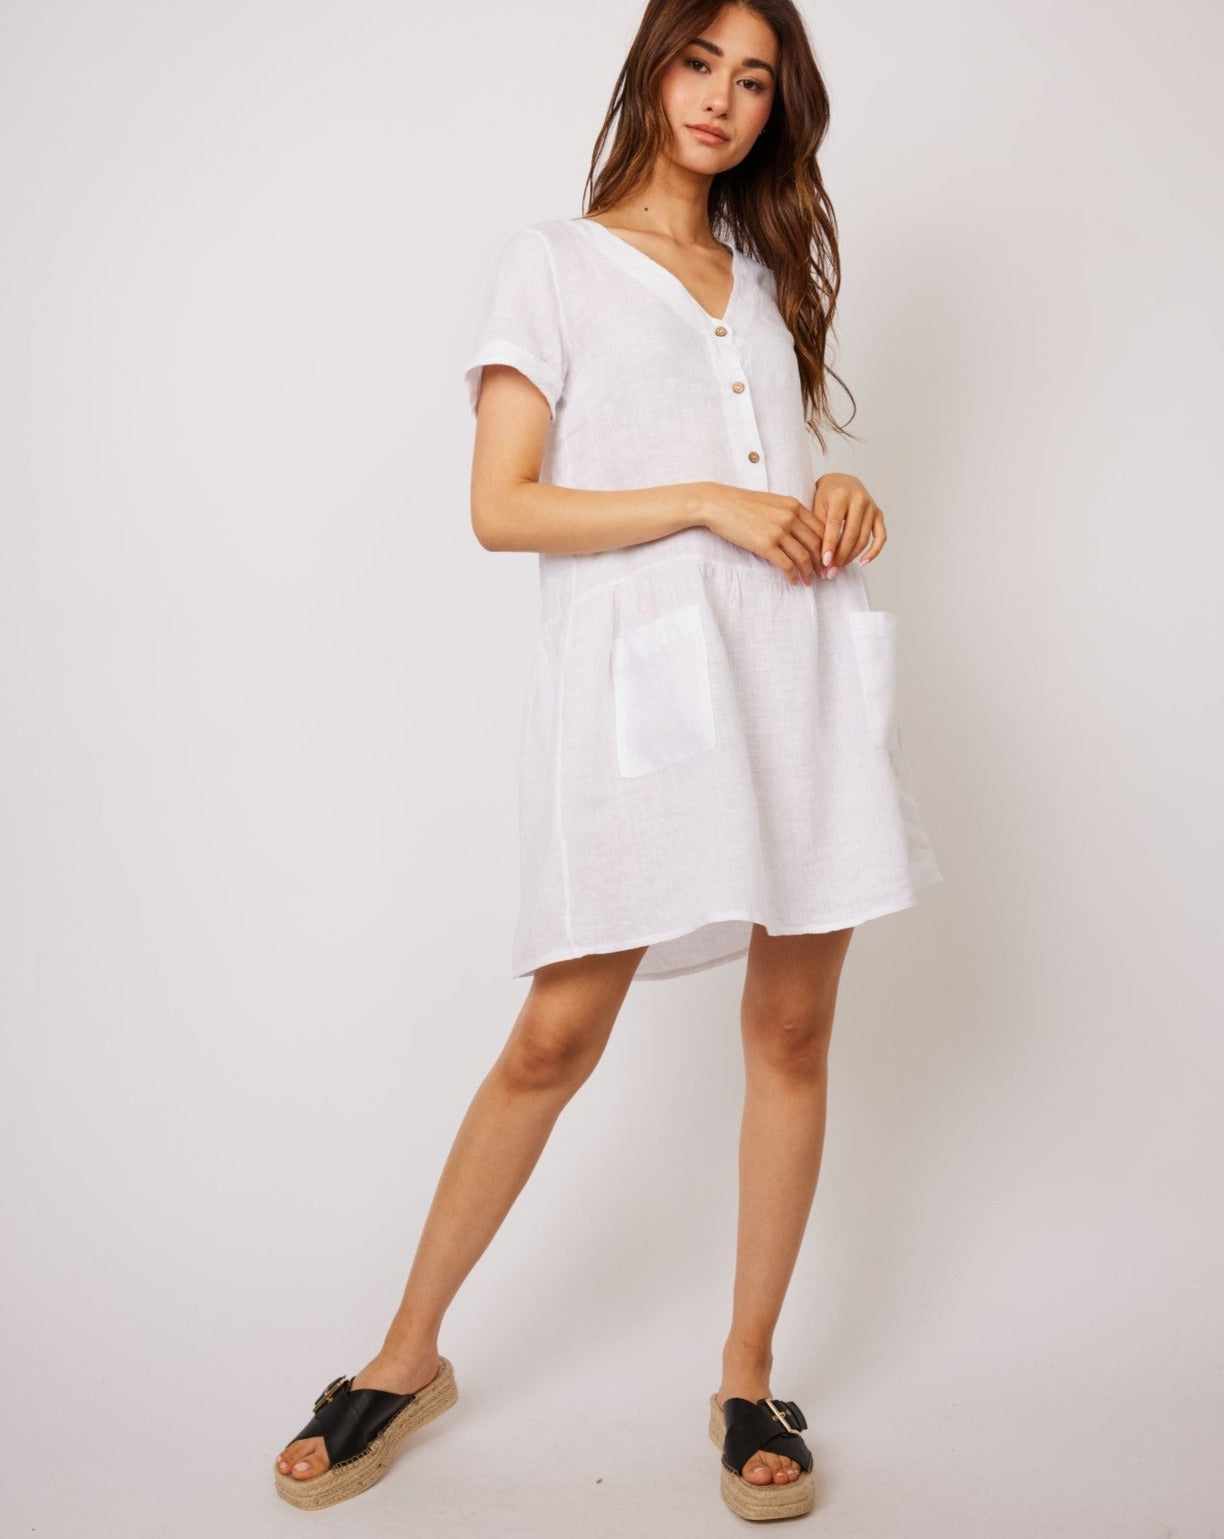 Short Sleeve Linen Dress W/ Button Top & Patch Pockets: Size S - Beestung Lingerie